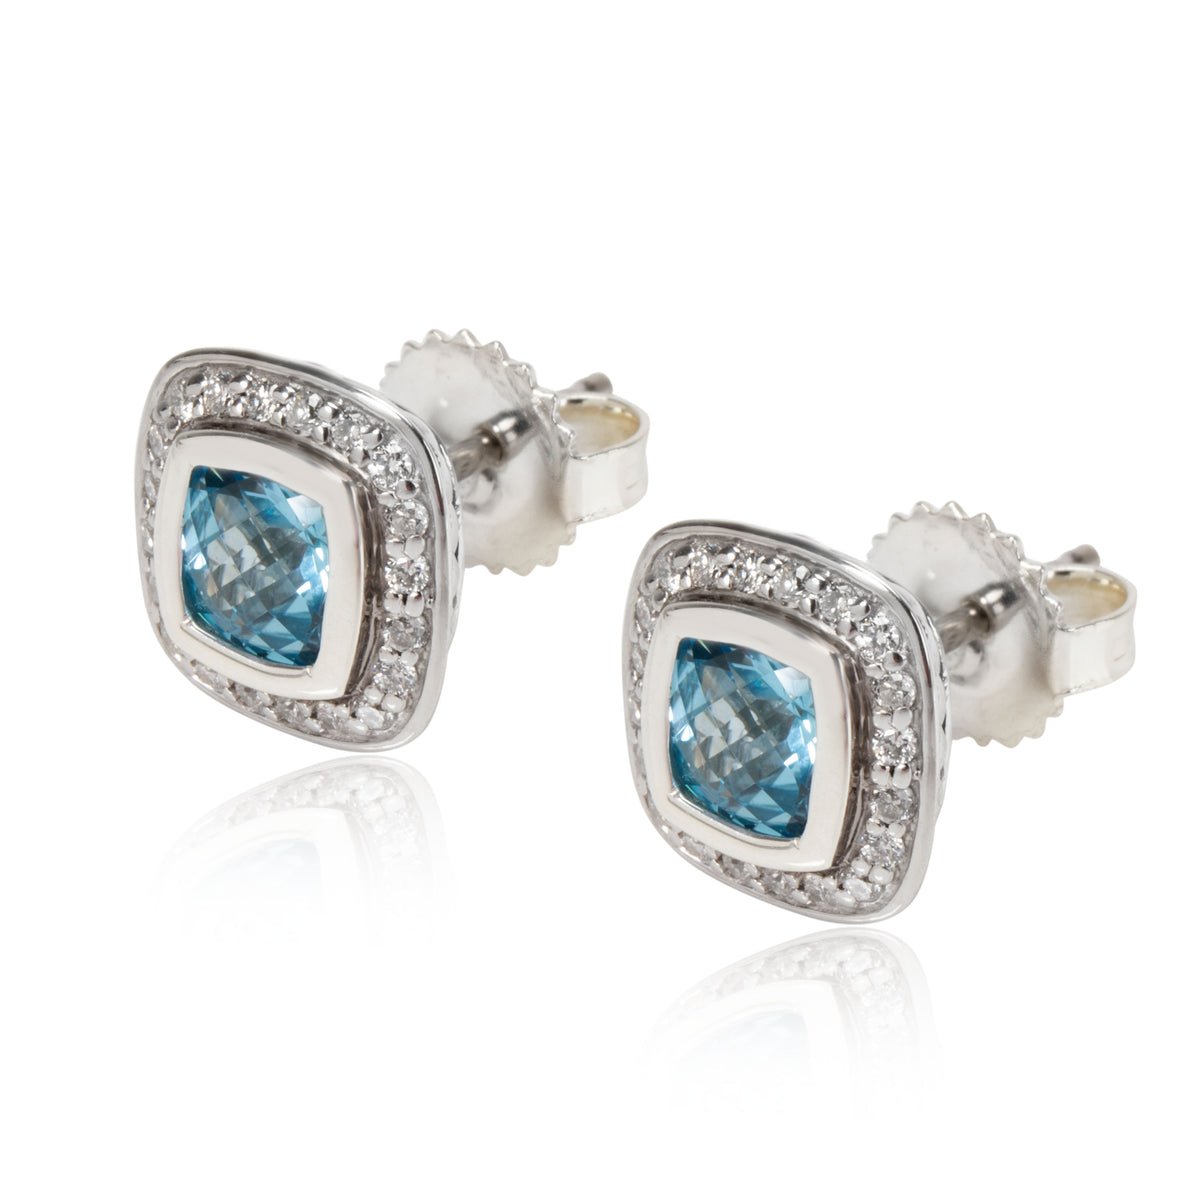 David Yurman Albion Blue Topaz Diamond Stud Earrings in Sterling Silver